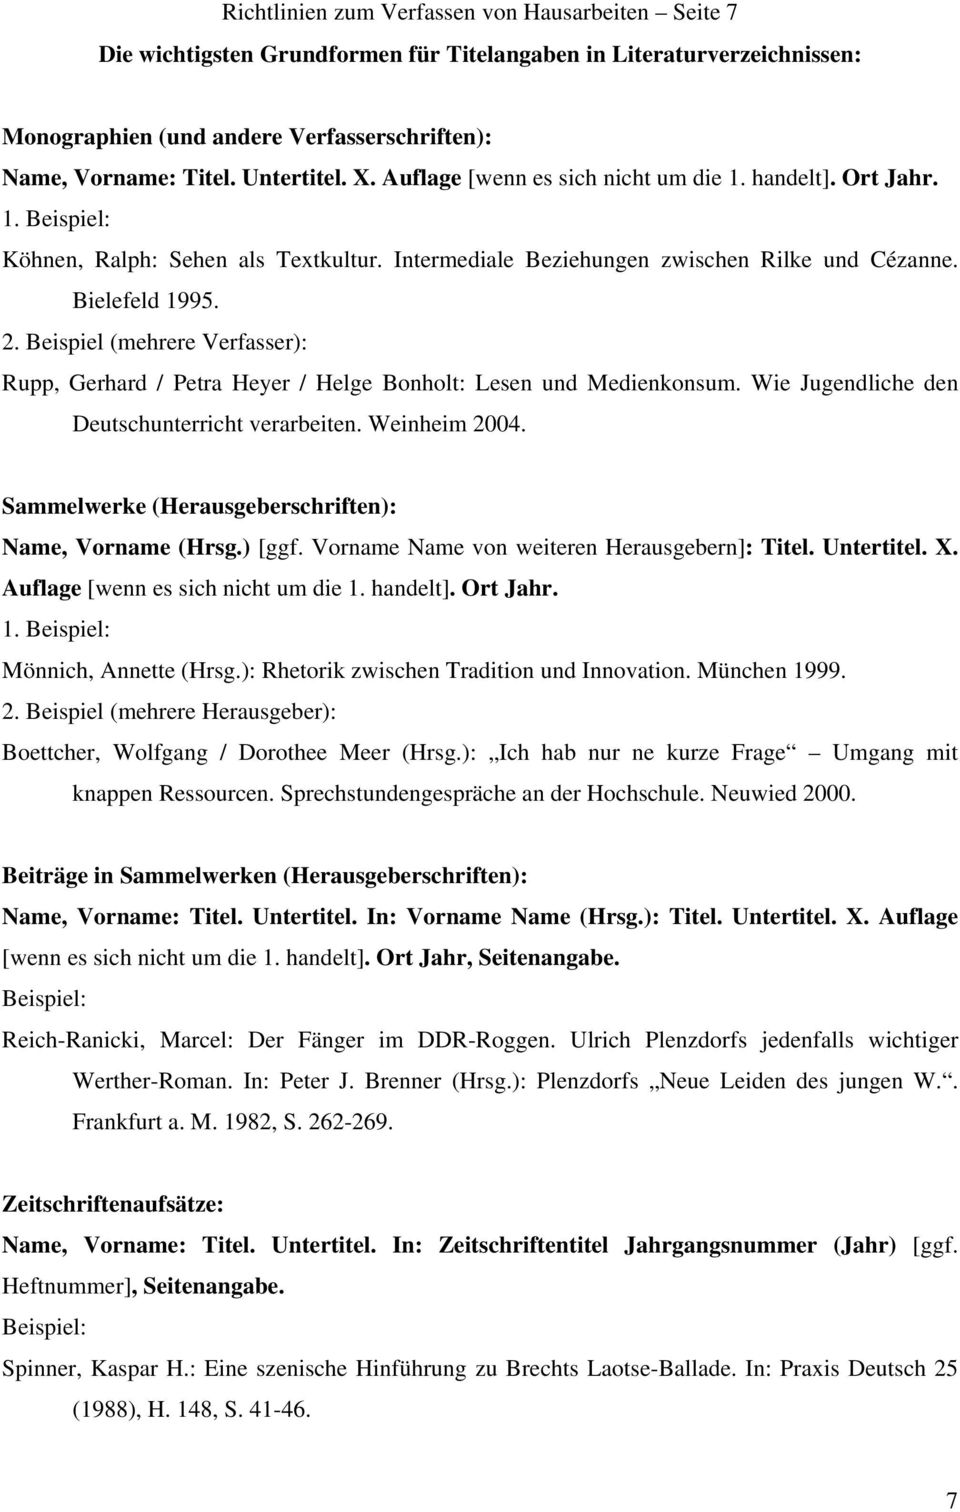 Beispiel (mehrere Verfasser): Rupp, Gerhard / Petra Heyer / Helge Bonholt: Lesen und Medienkonsum. Wie Jugendliche den Deutschunterricht verarbeiten. Weinheim 2004.